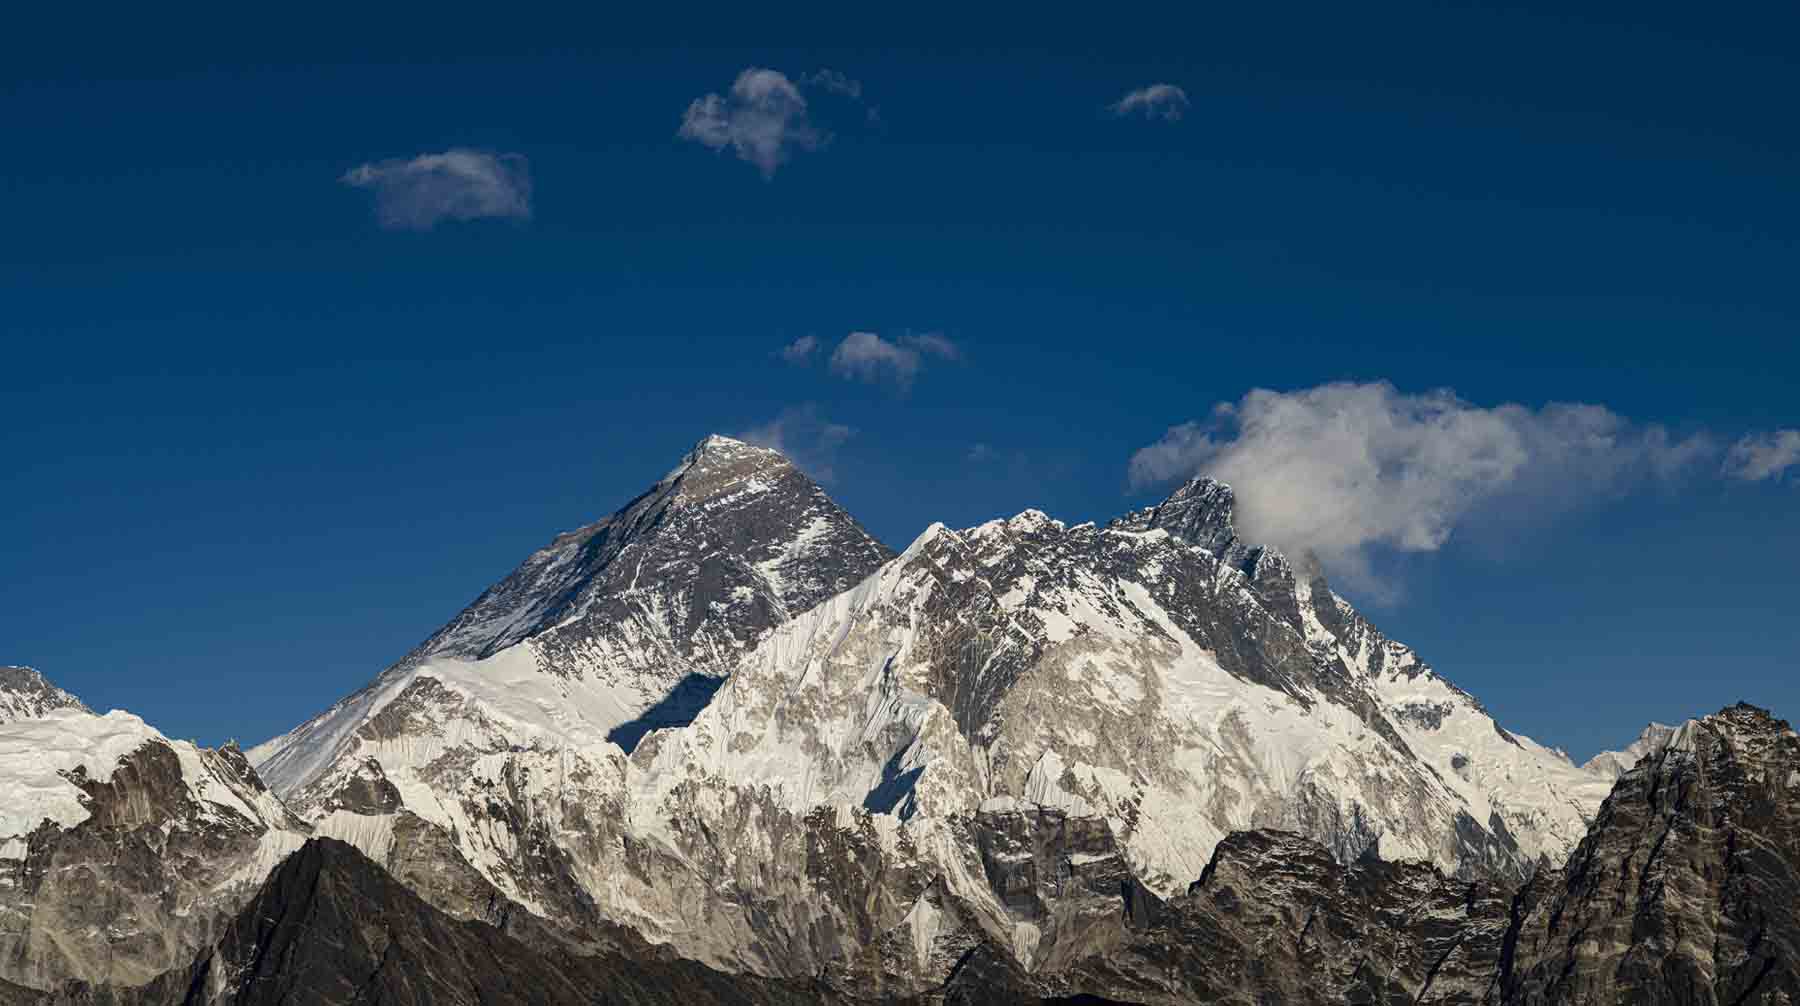 Dailystorm - Китай и Непал пересчитали высоту Эвереста